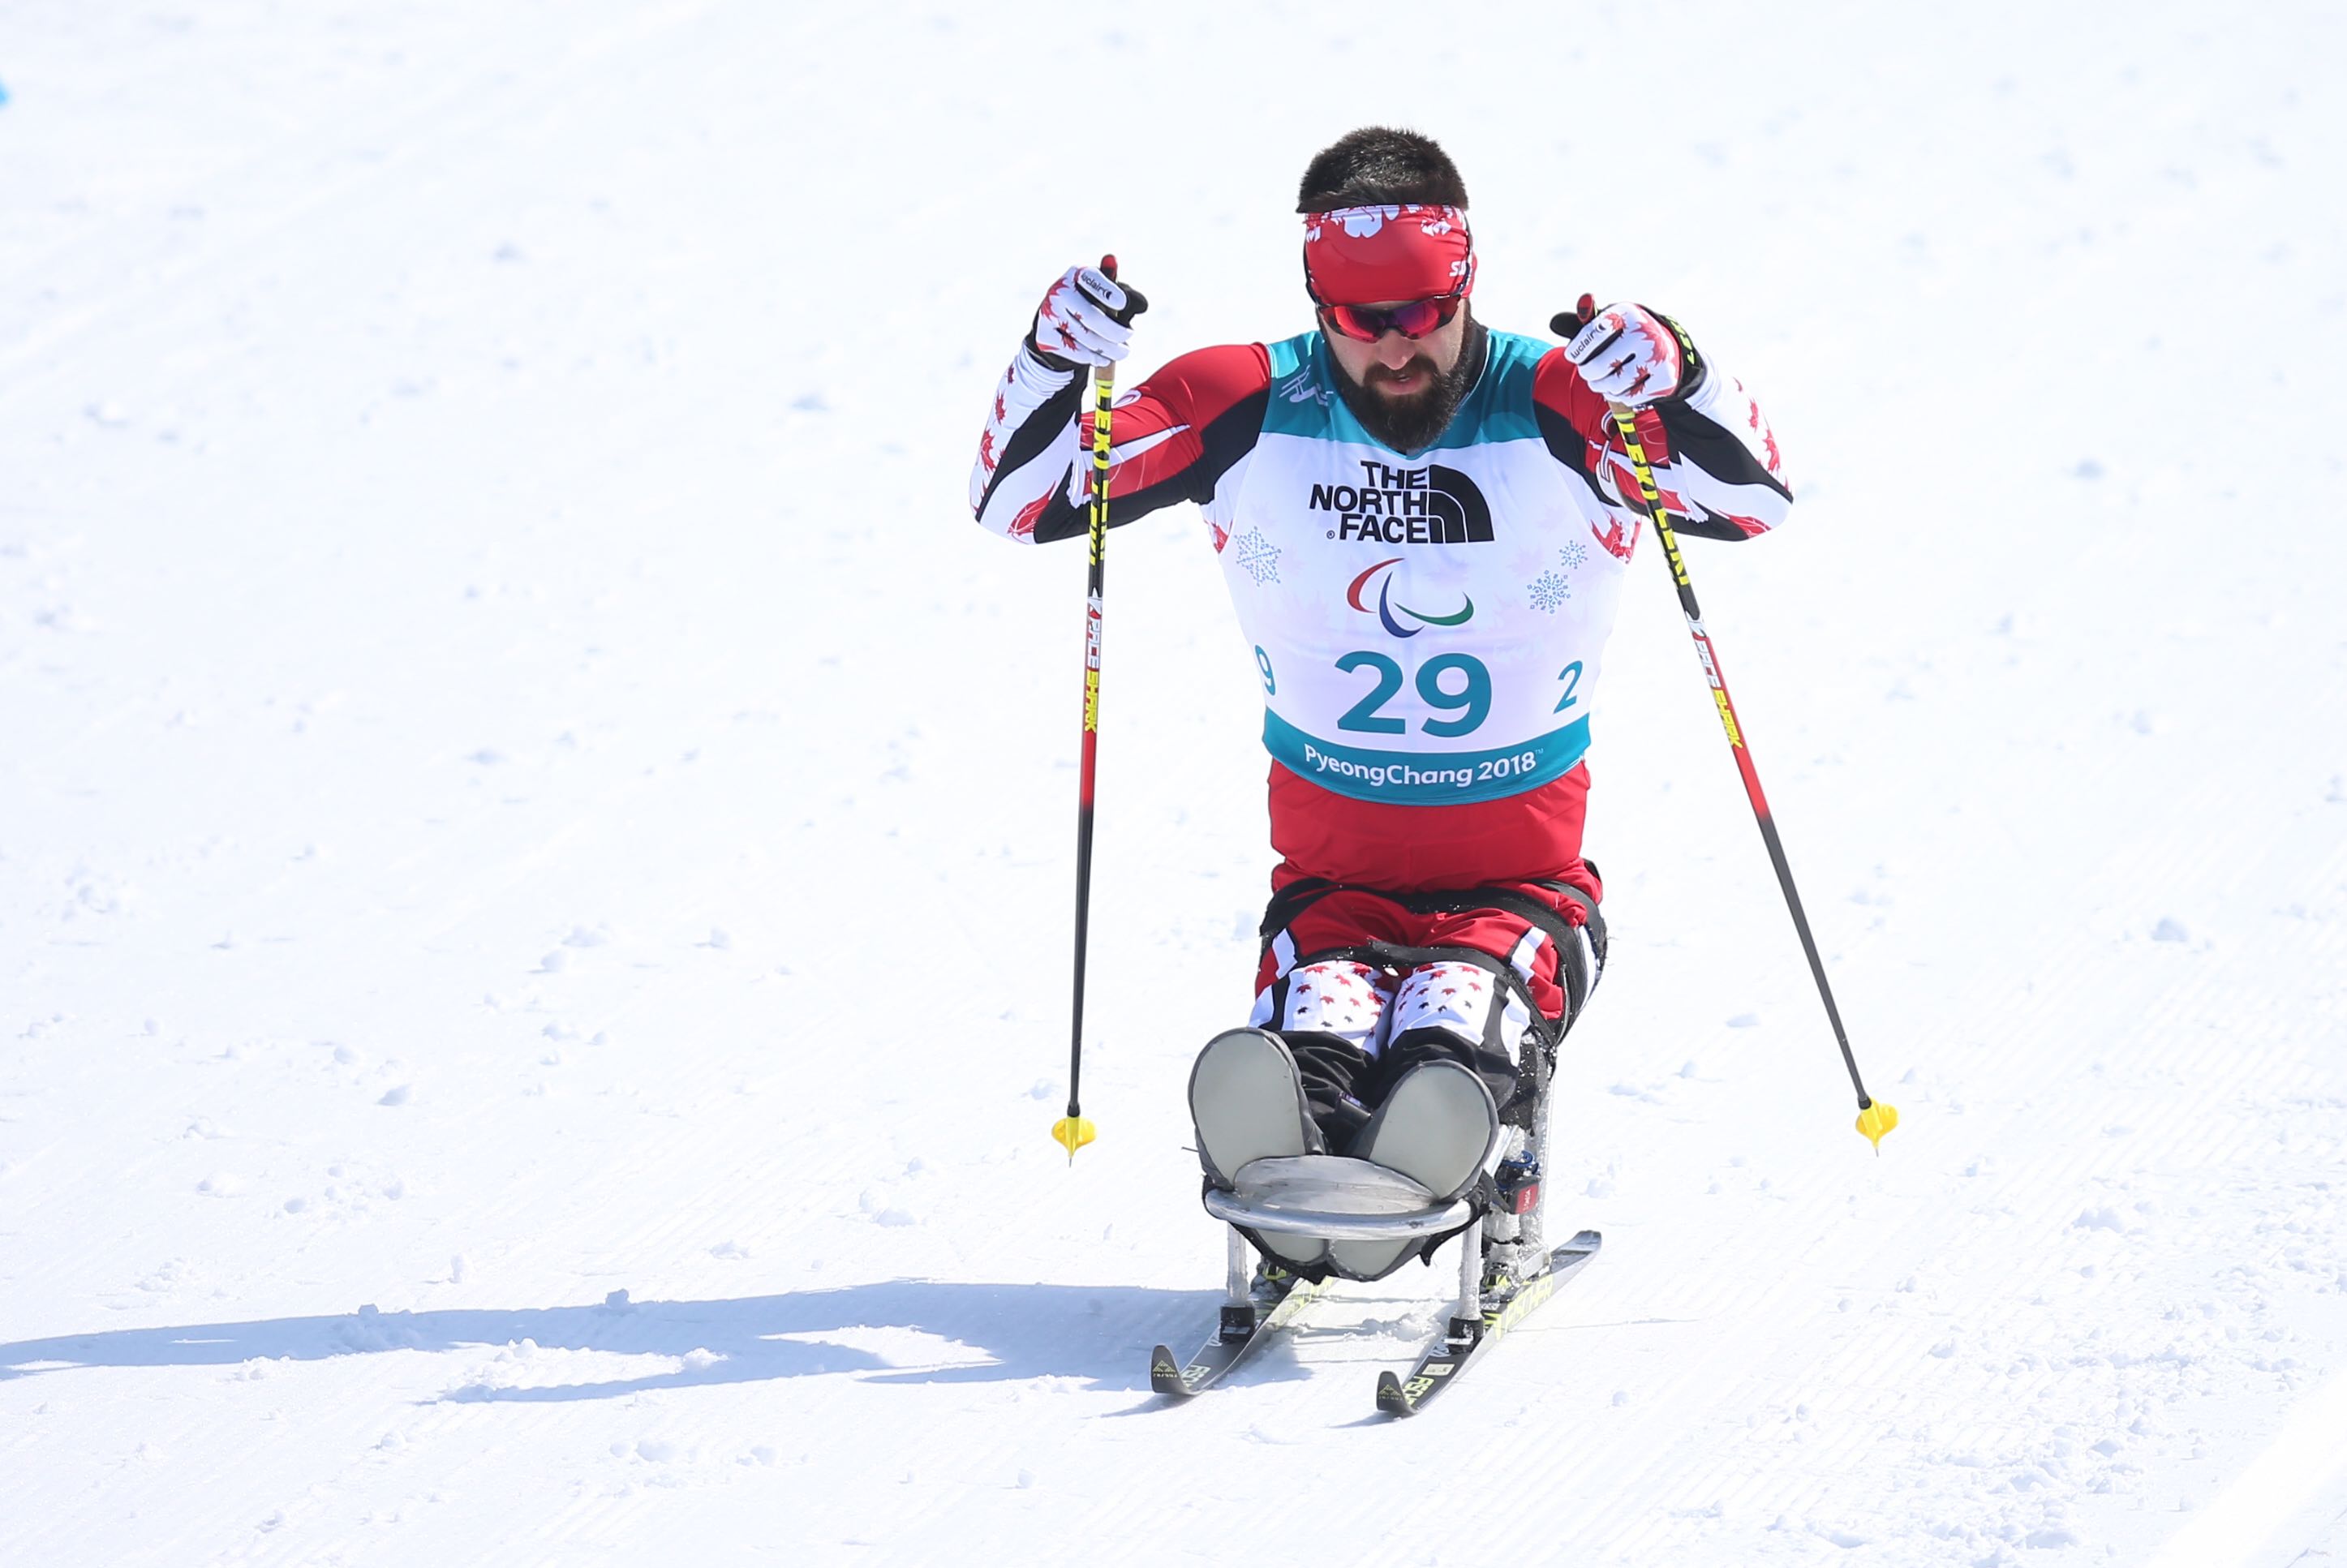 Collin Cameron in his sit ski race